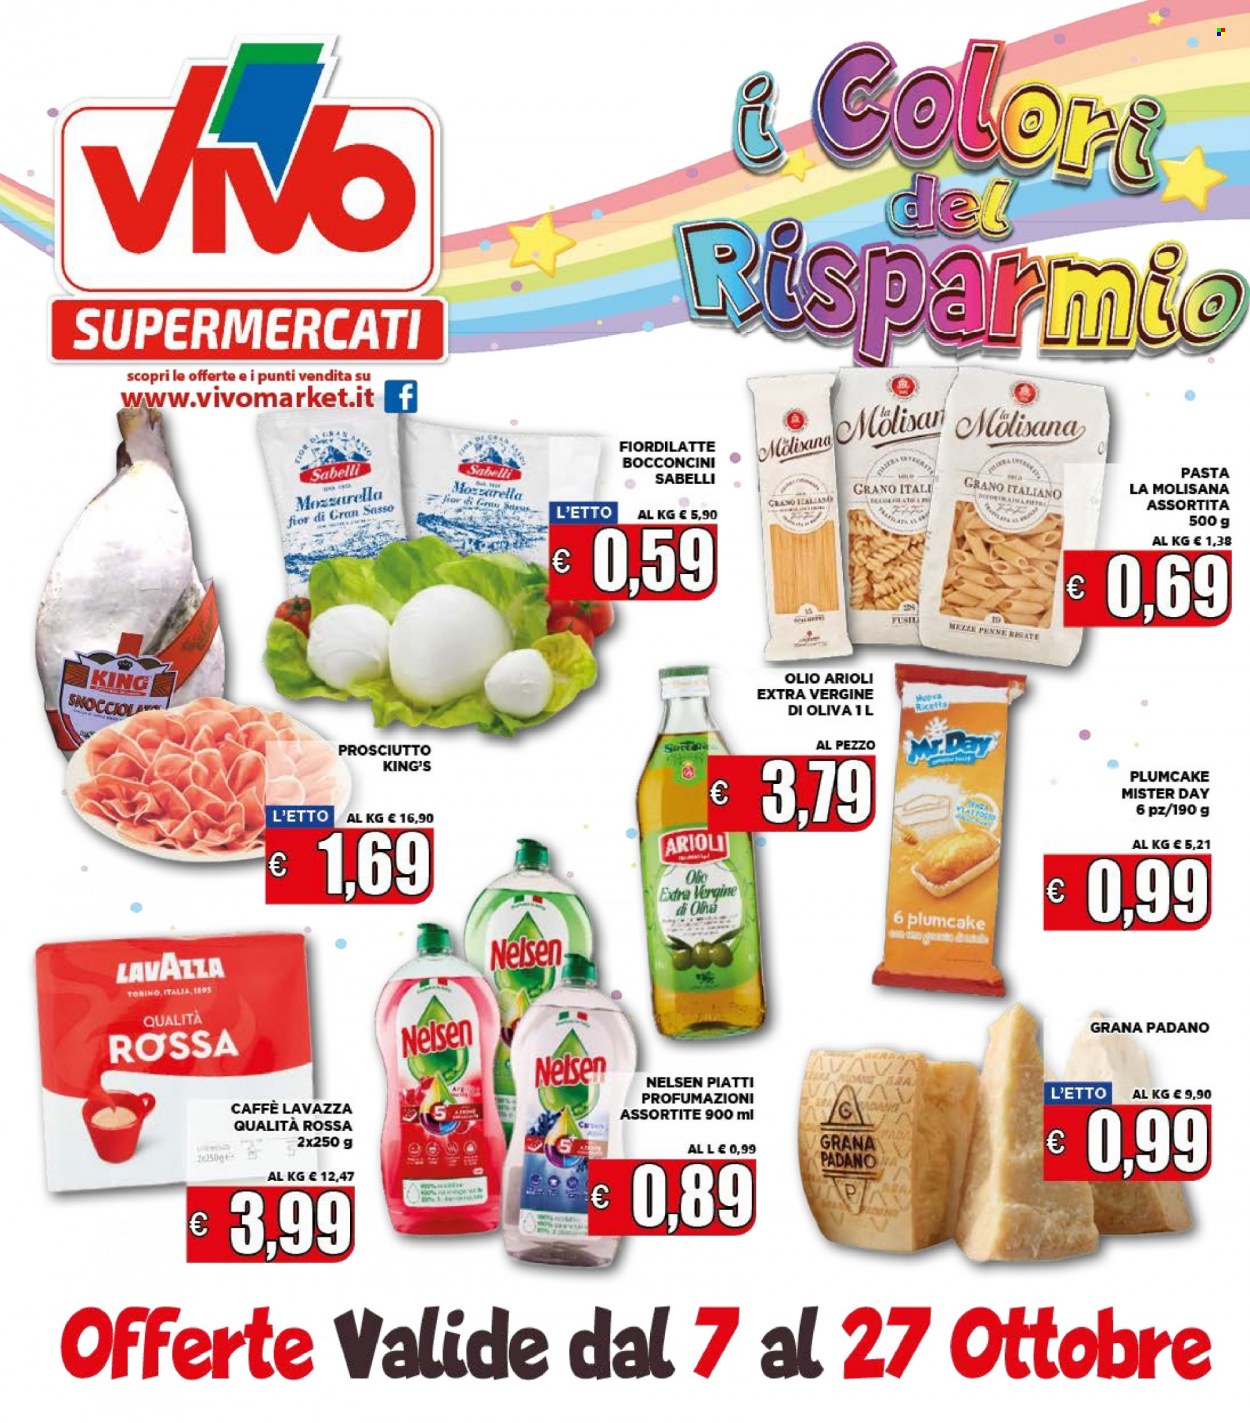 thumbnail - Volantino Supermercati VIVO - 7/10/2021 - 27/10/2021 - Prodotti in offerta - plumcake, prosciutto, formaggio, Fior di Latte, Grana Padano, pasta, penne, olio, caffè, Lavazza. Pagina 1.